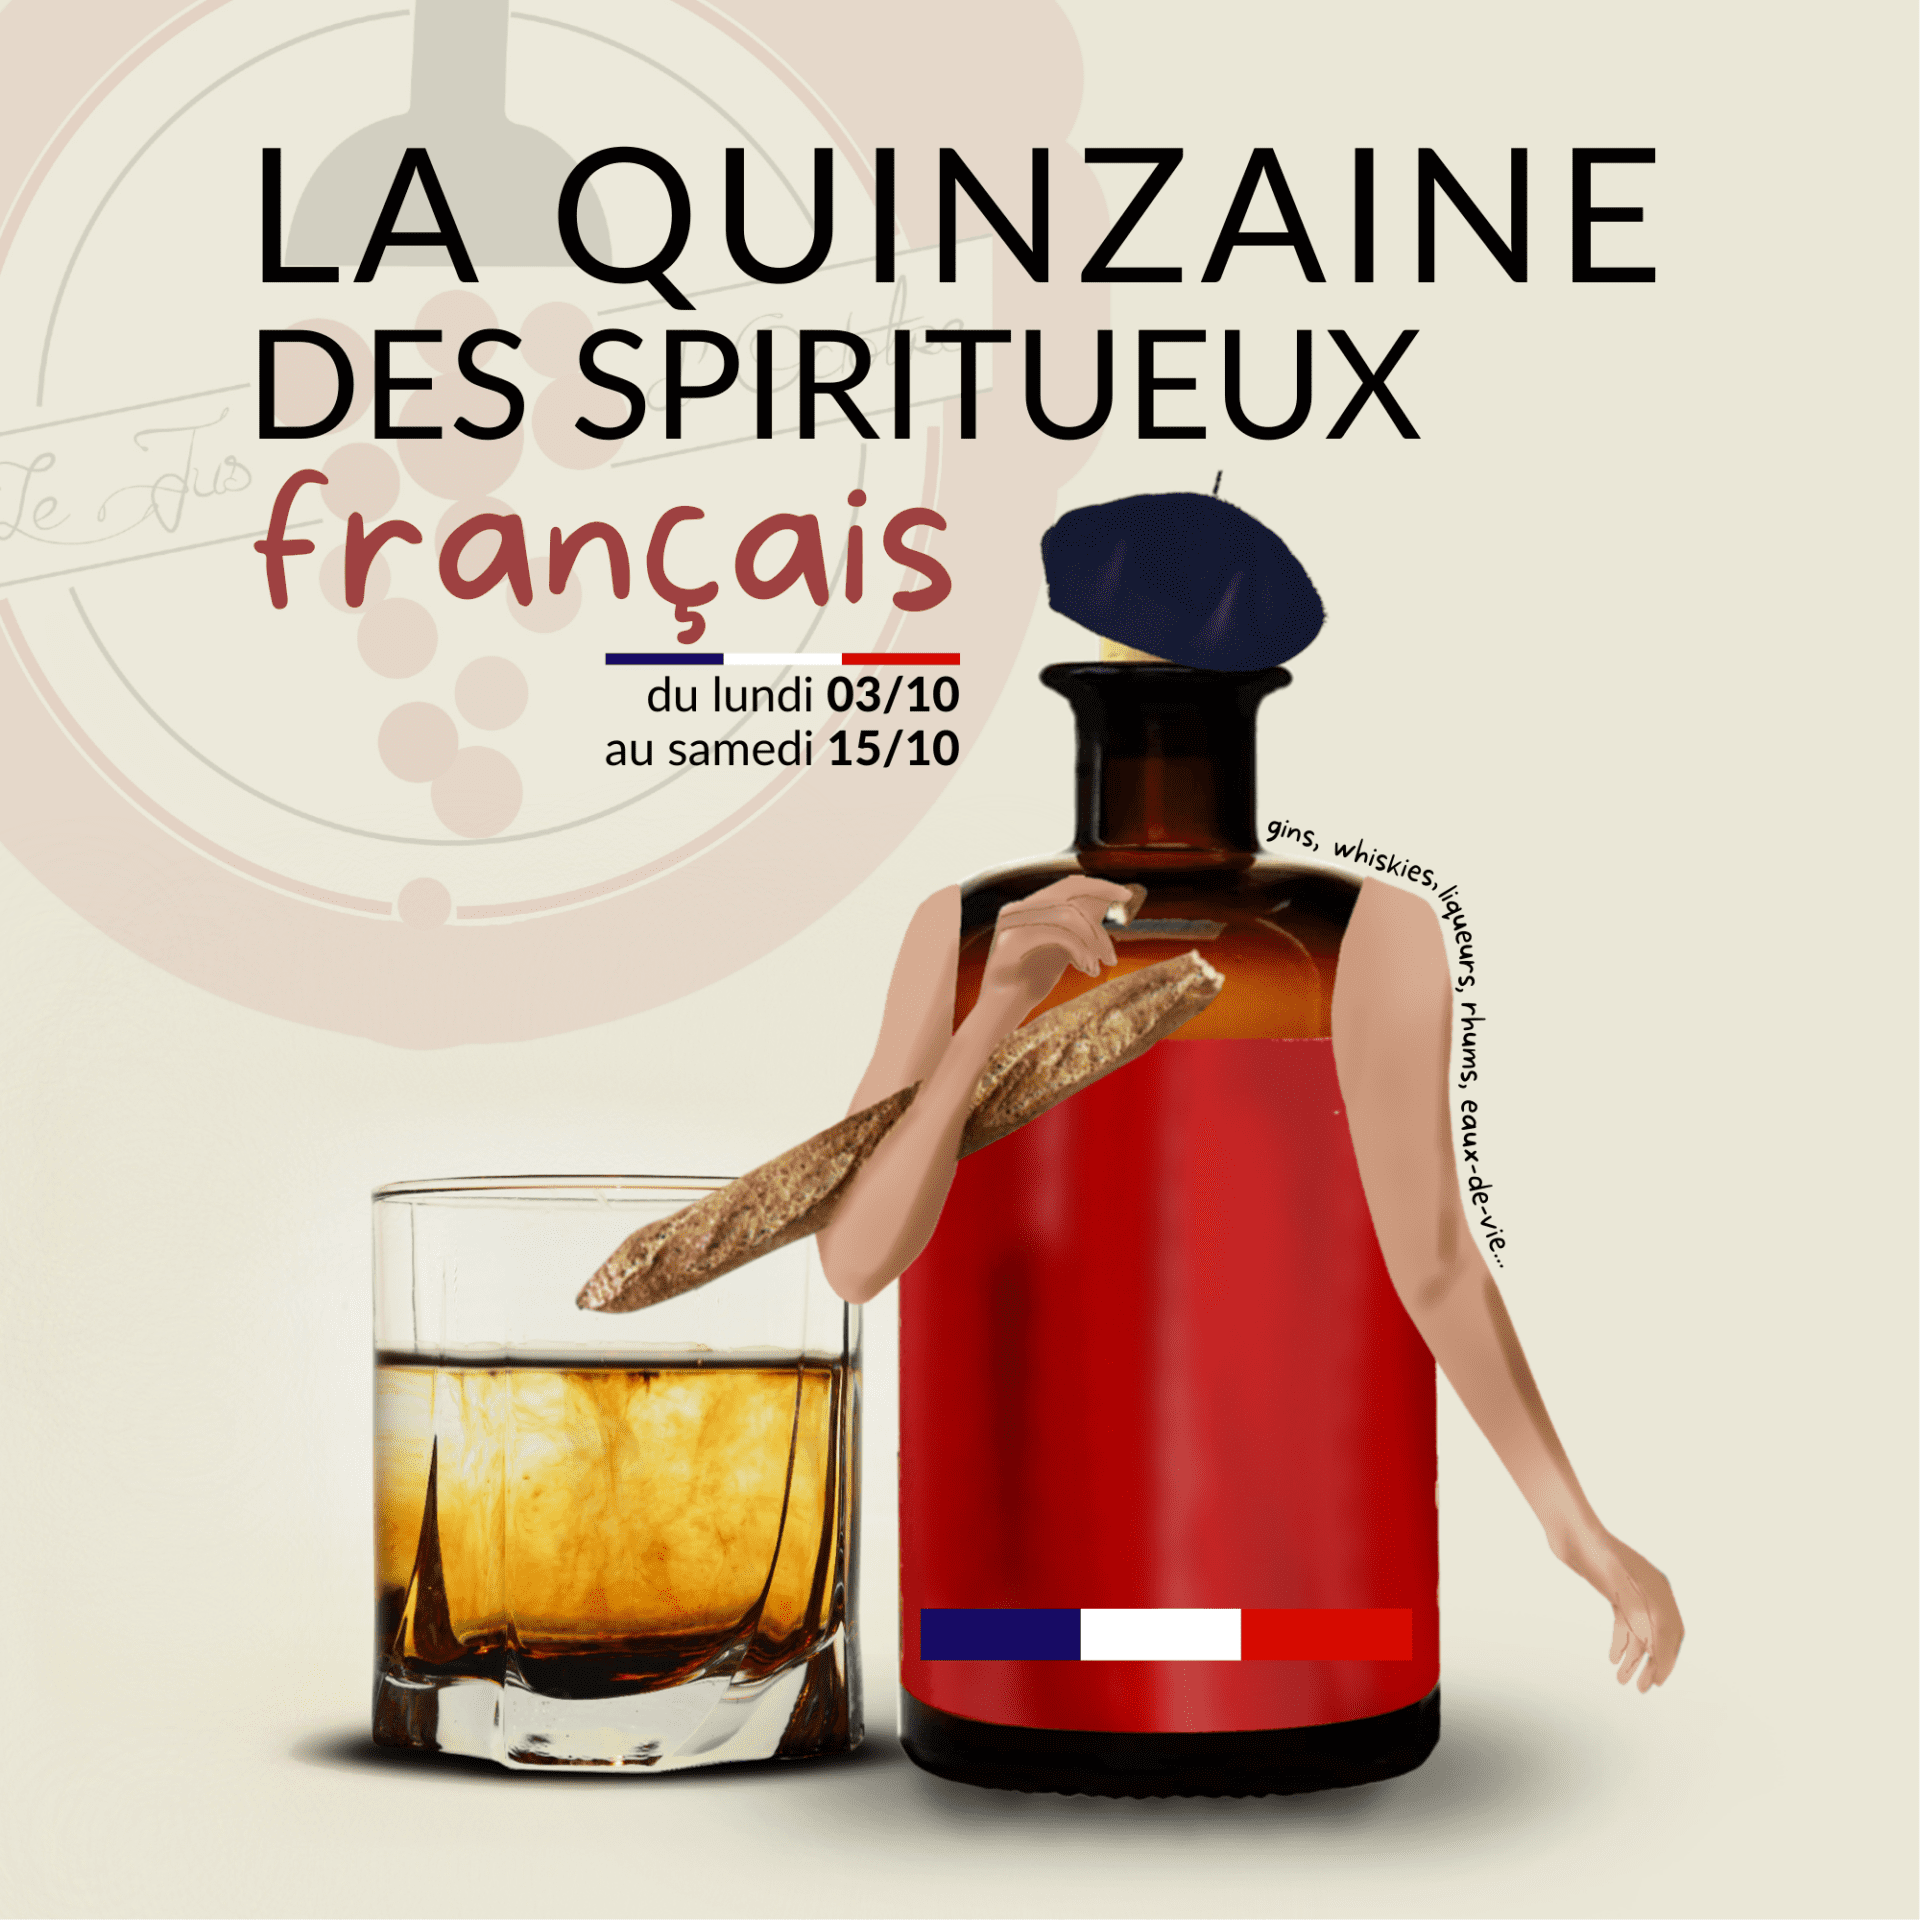 La Quinzaine des spiritueux français